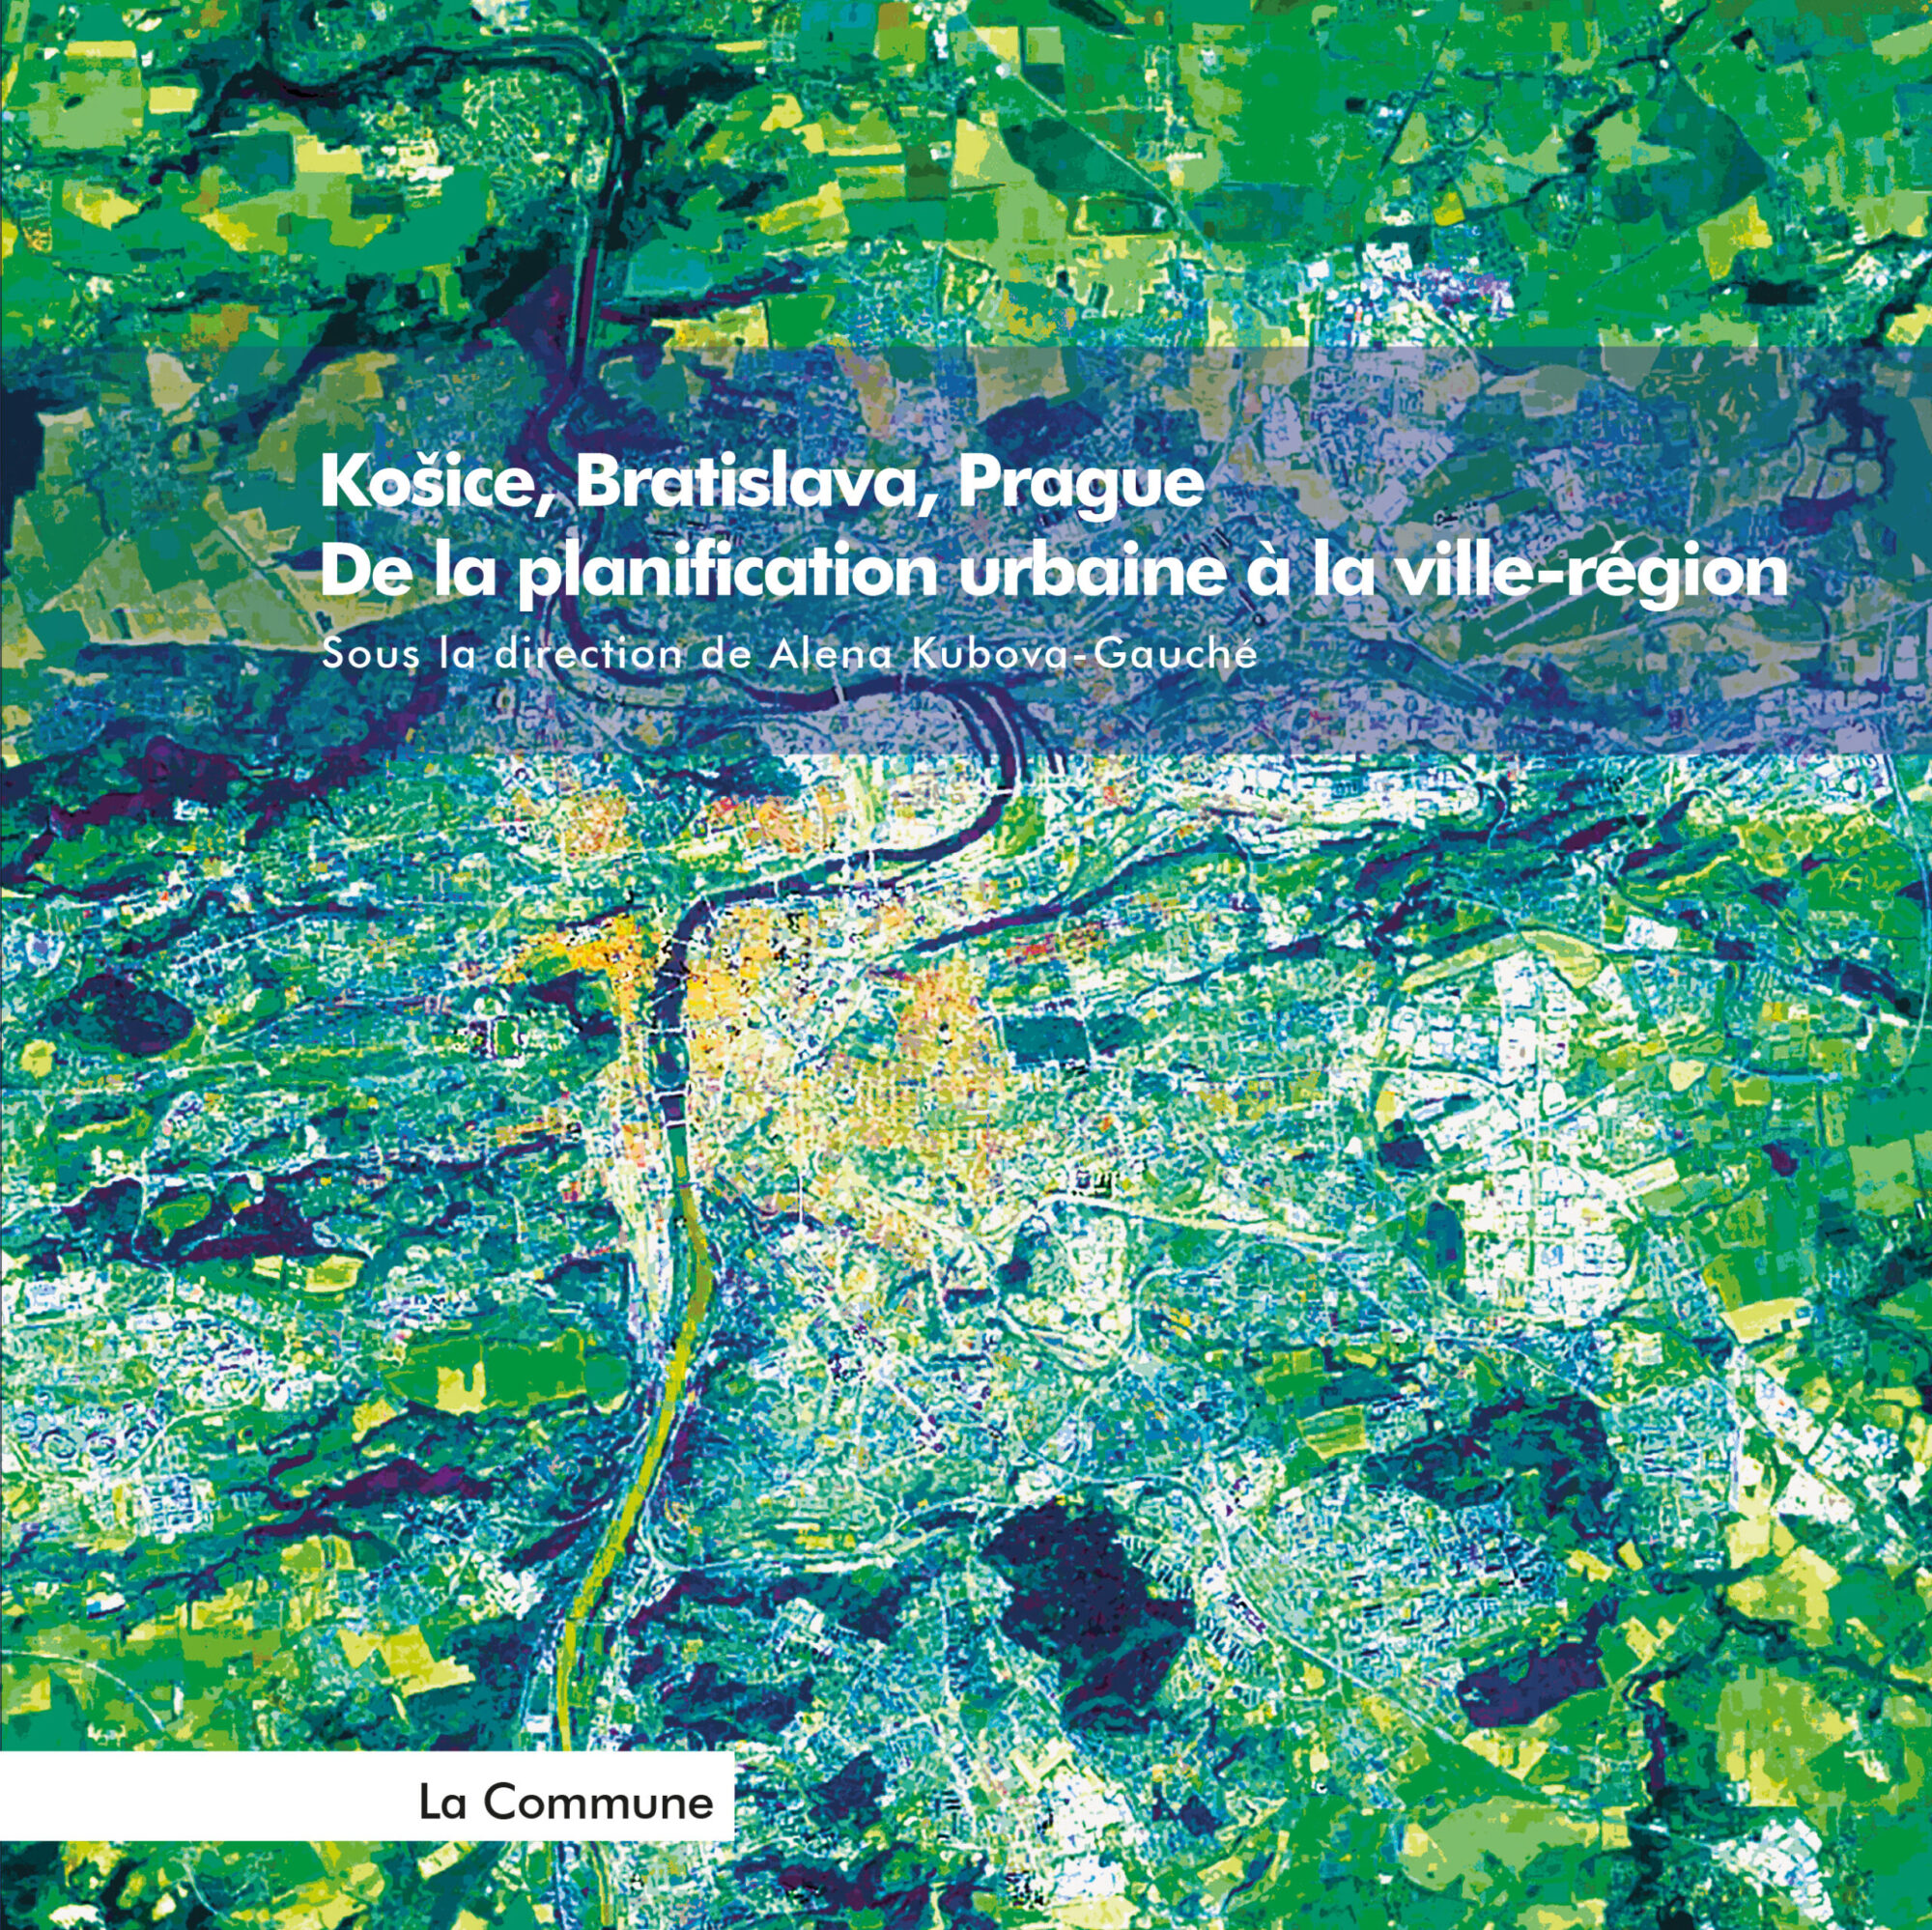 Košice, Bratislava, Prague. De la planification urbaine à la ville-région.